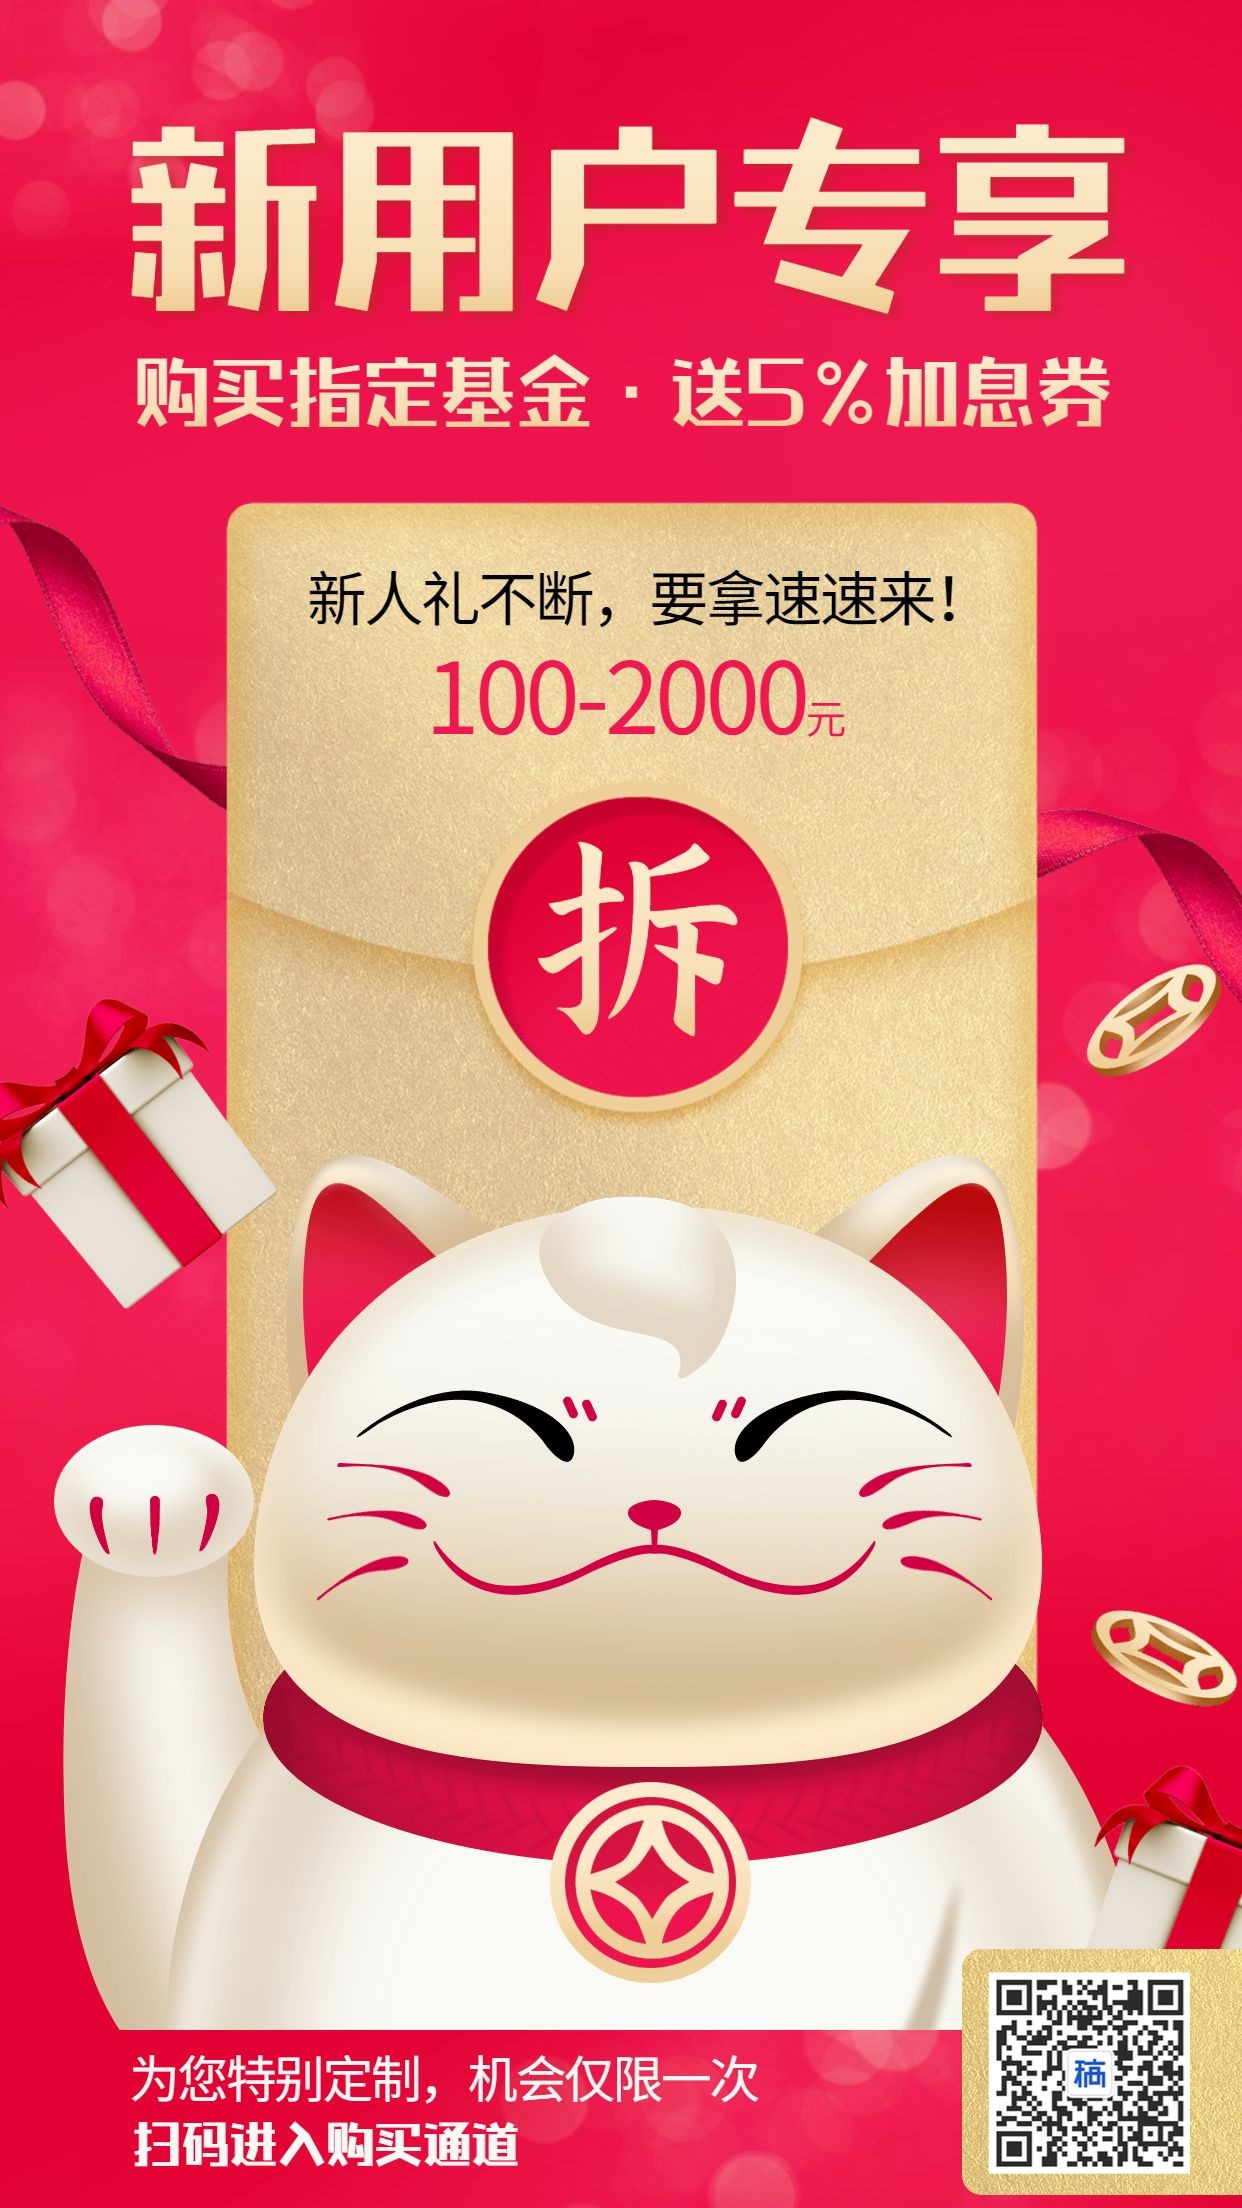 金融保险新用户领红包招财猫手机海报预览效果